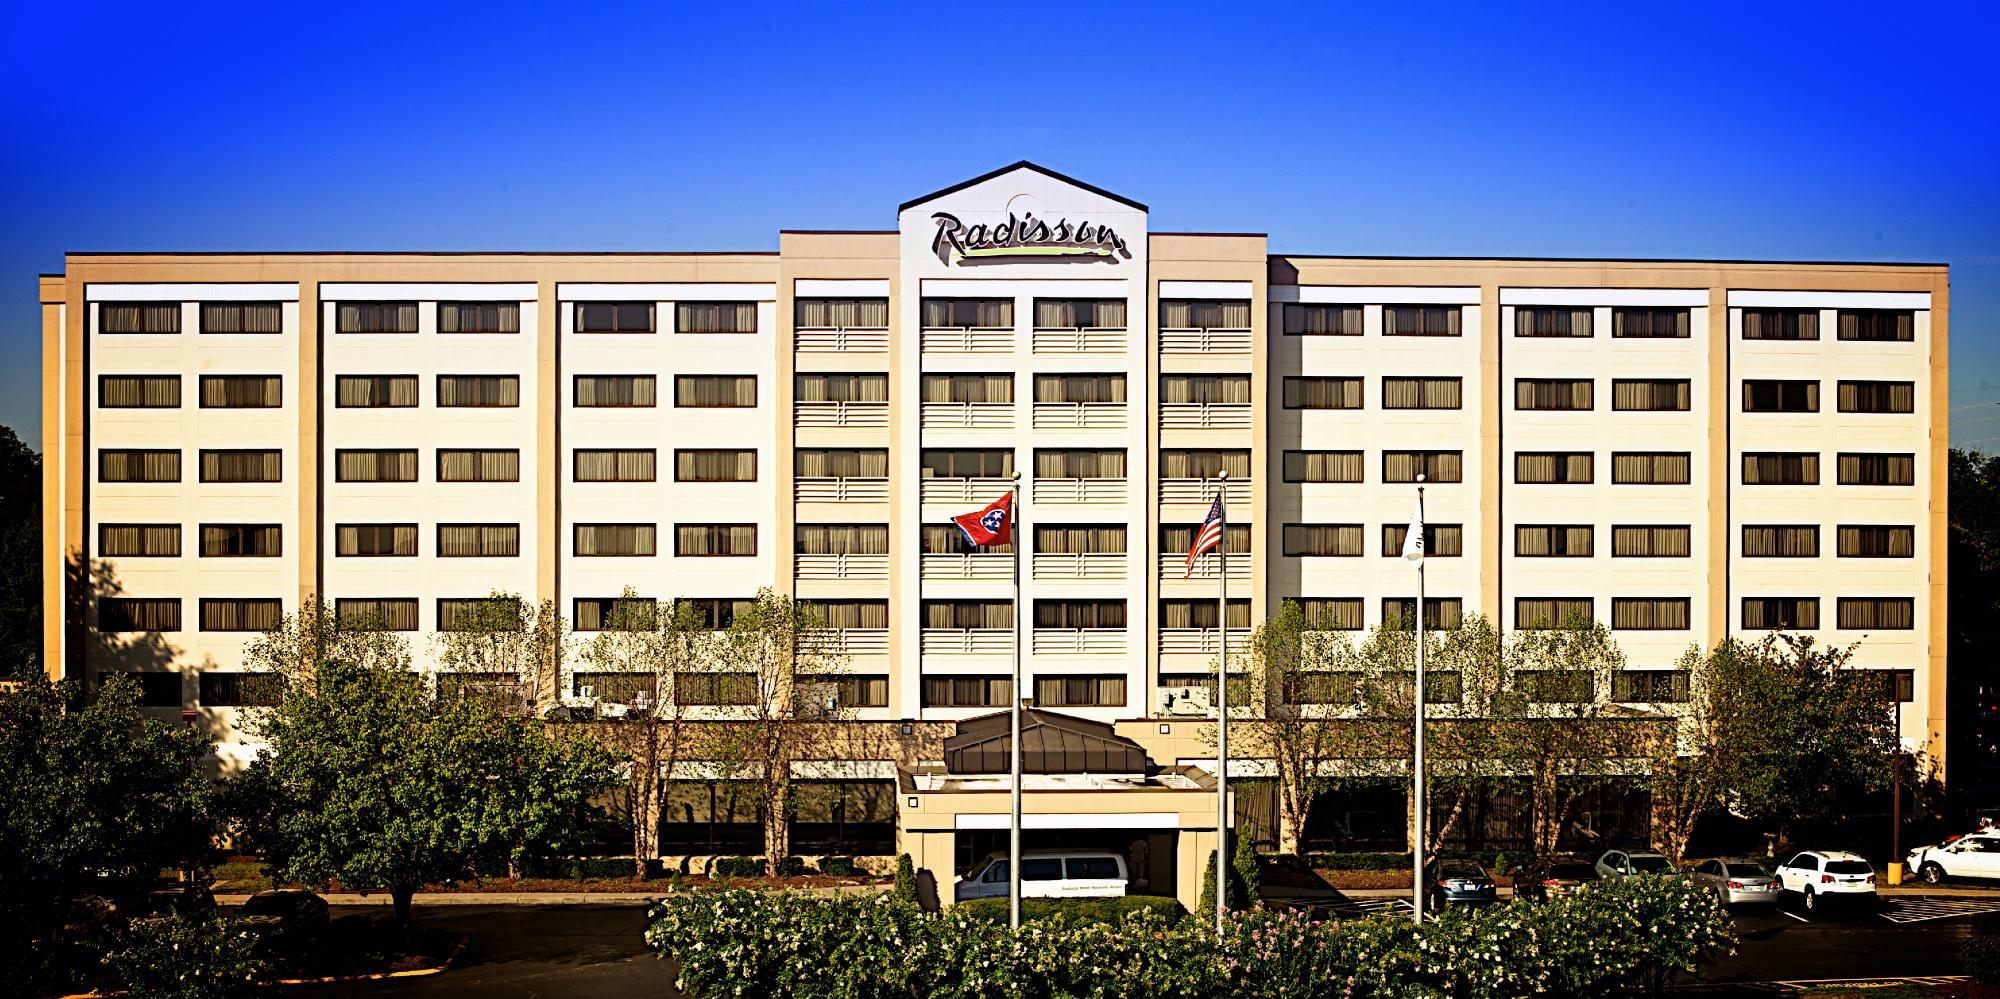 Photo of Radisson Hotel Nashville Airport, Nashville, TN